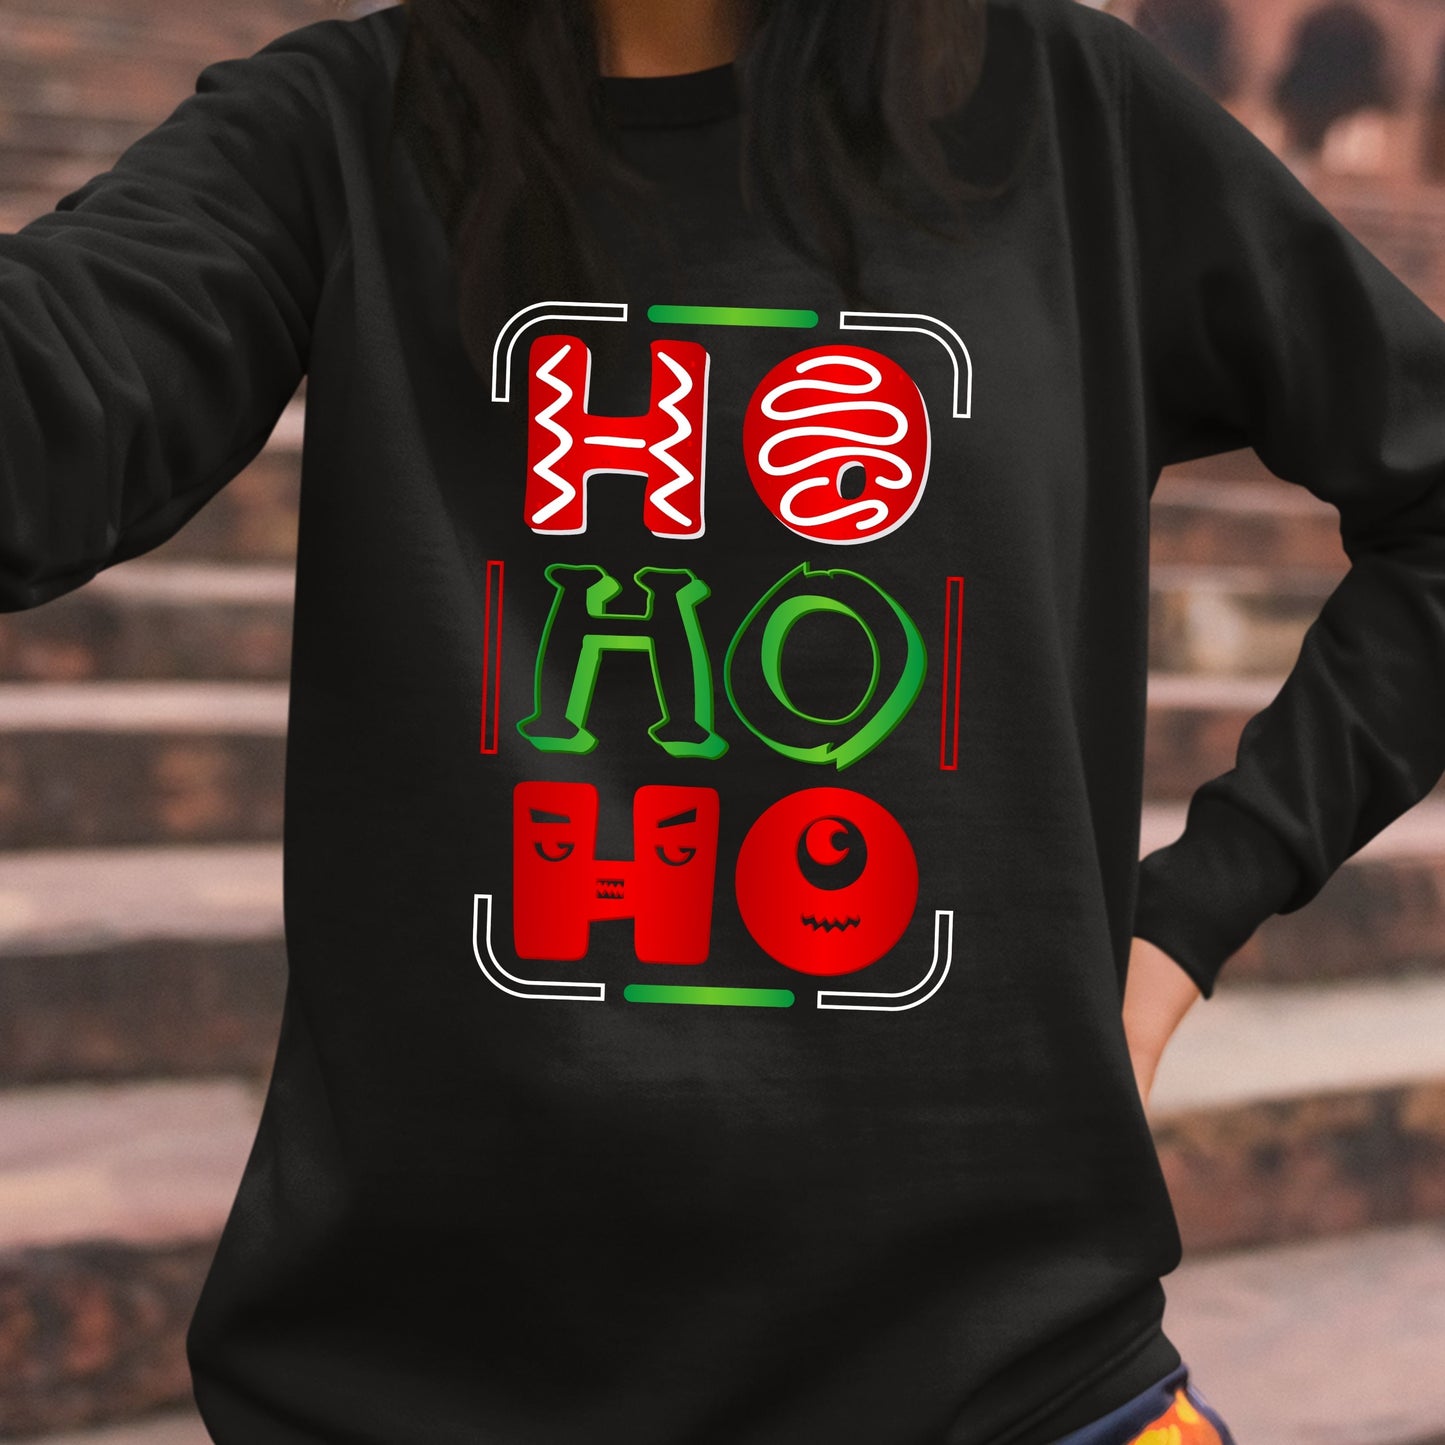 Ho Ho Ho, Christmas Sweatshirt, Christmas Long Sleeves, Christmas Sweater, Christmas Crewneck For Youth, Christmas Present